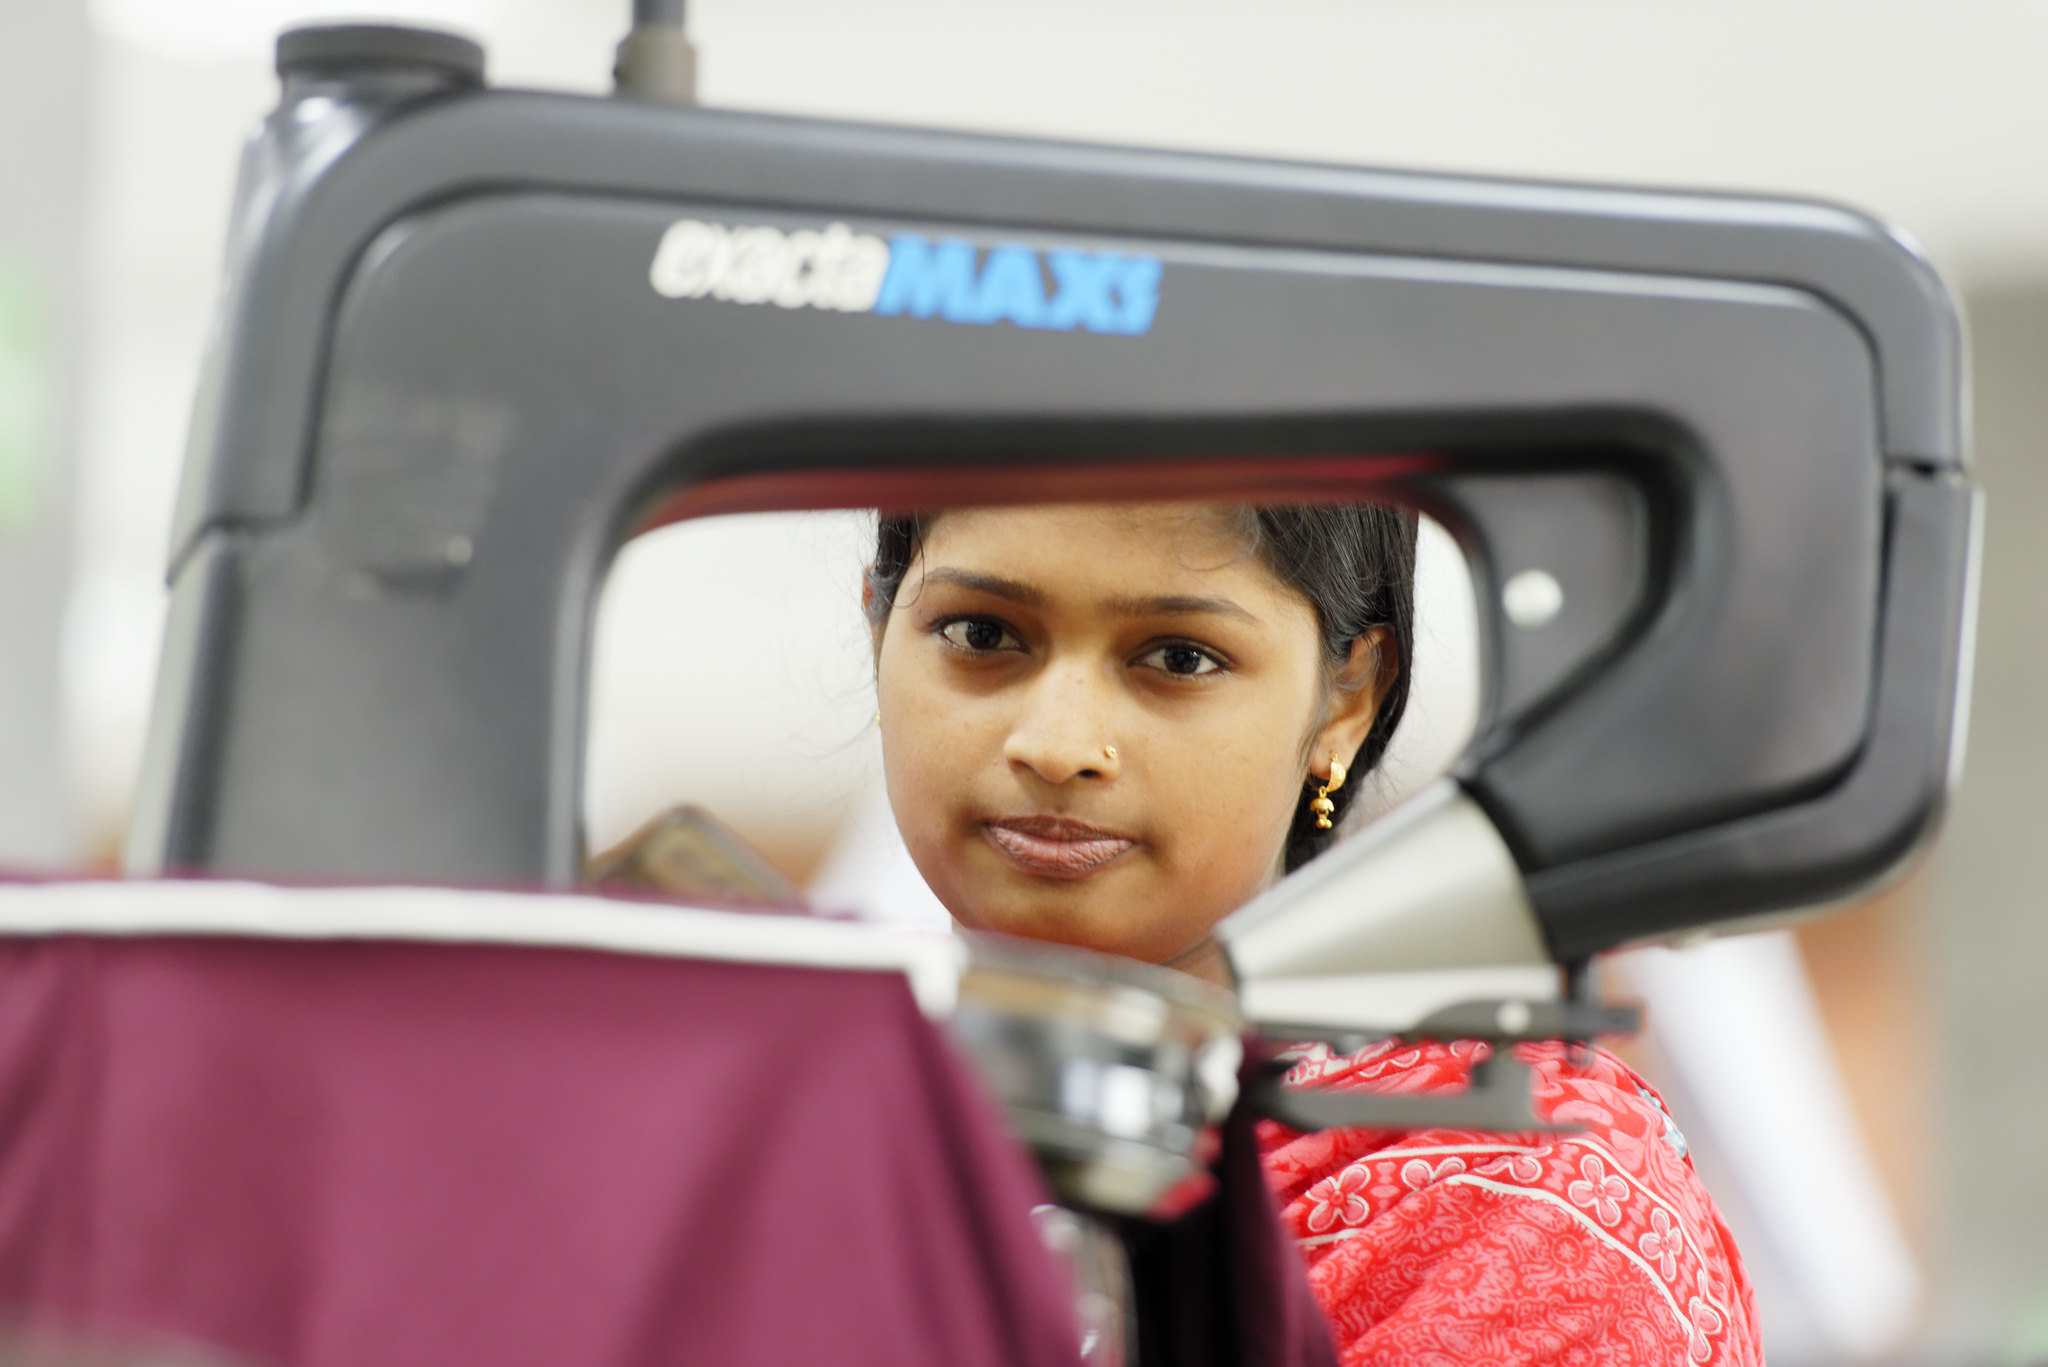 Một phụ nữ trẻ người Bangladesh mặc đồ đỏ ngồi sau chiếc máy may.